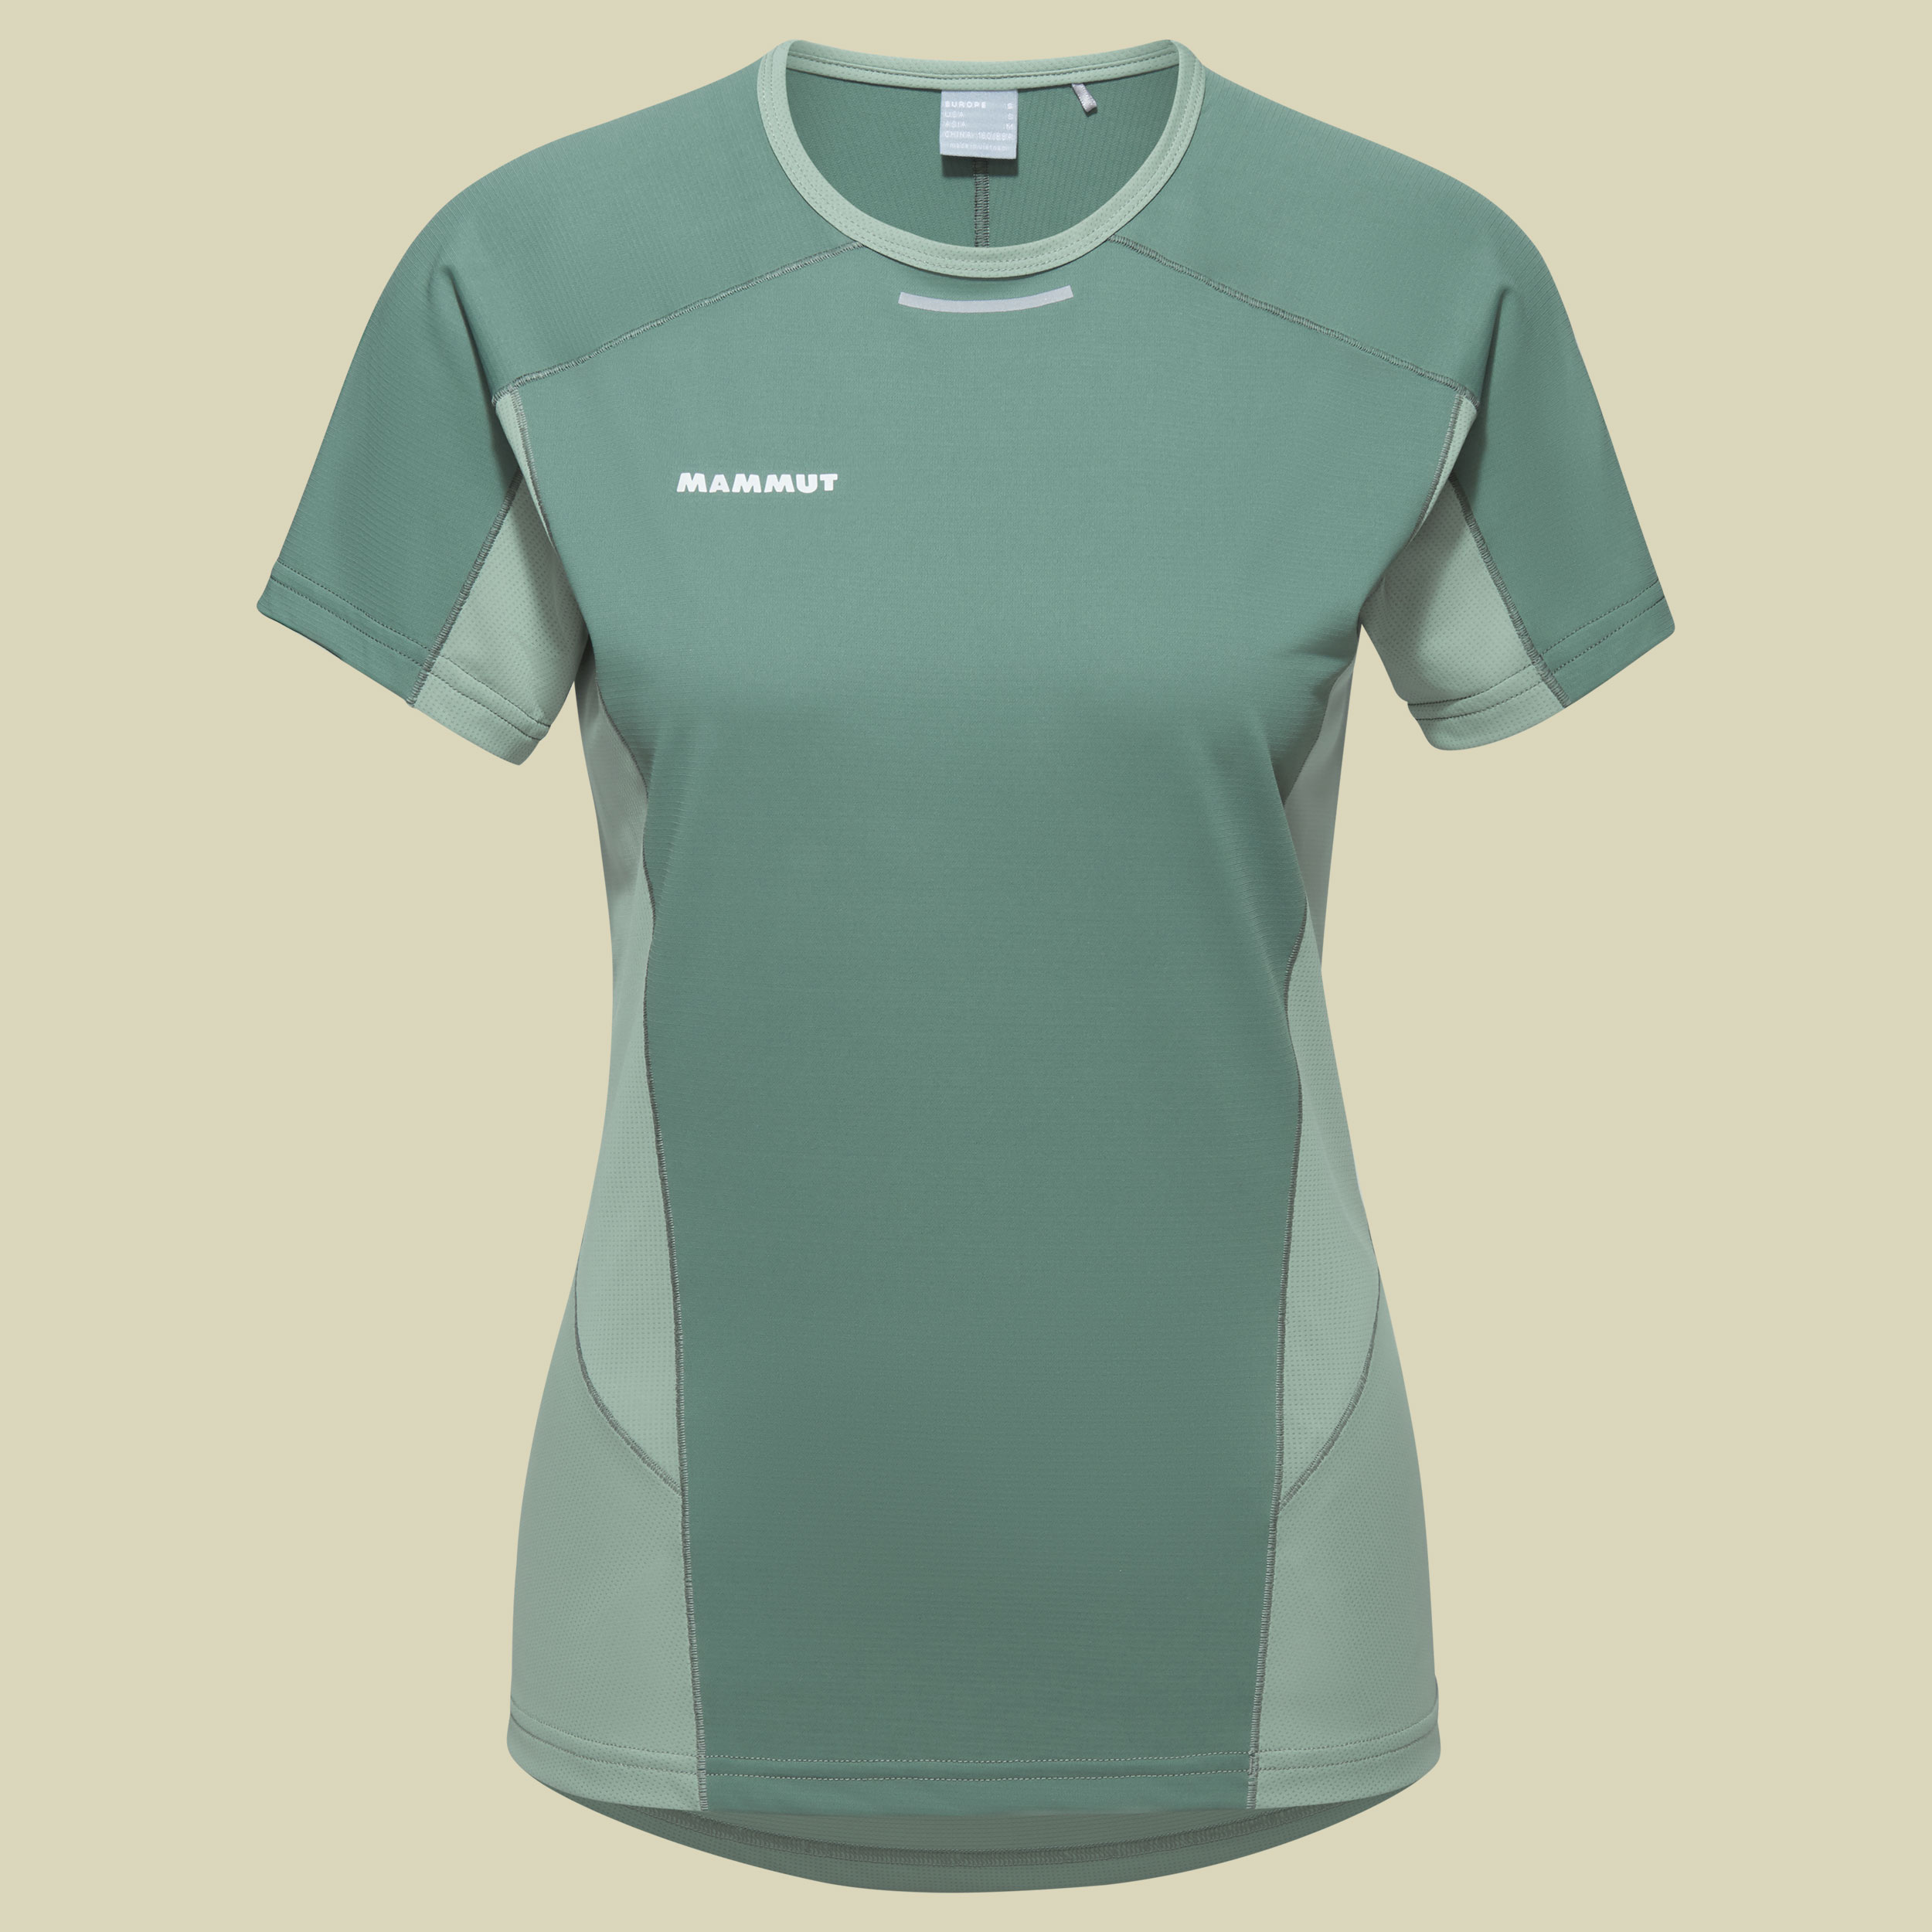 Aenergy FL T-Shirt Women Größe S Farbe dark jade-jade